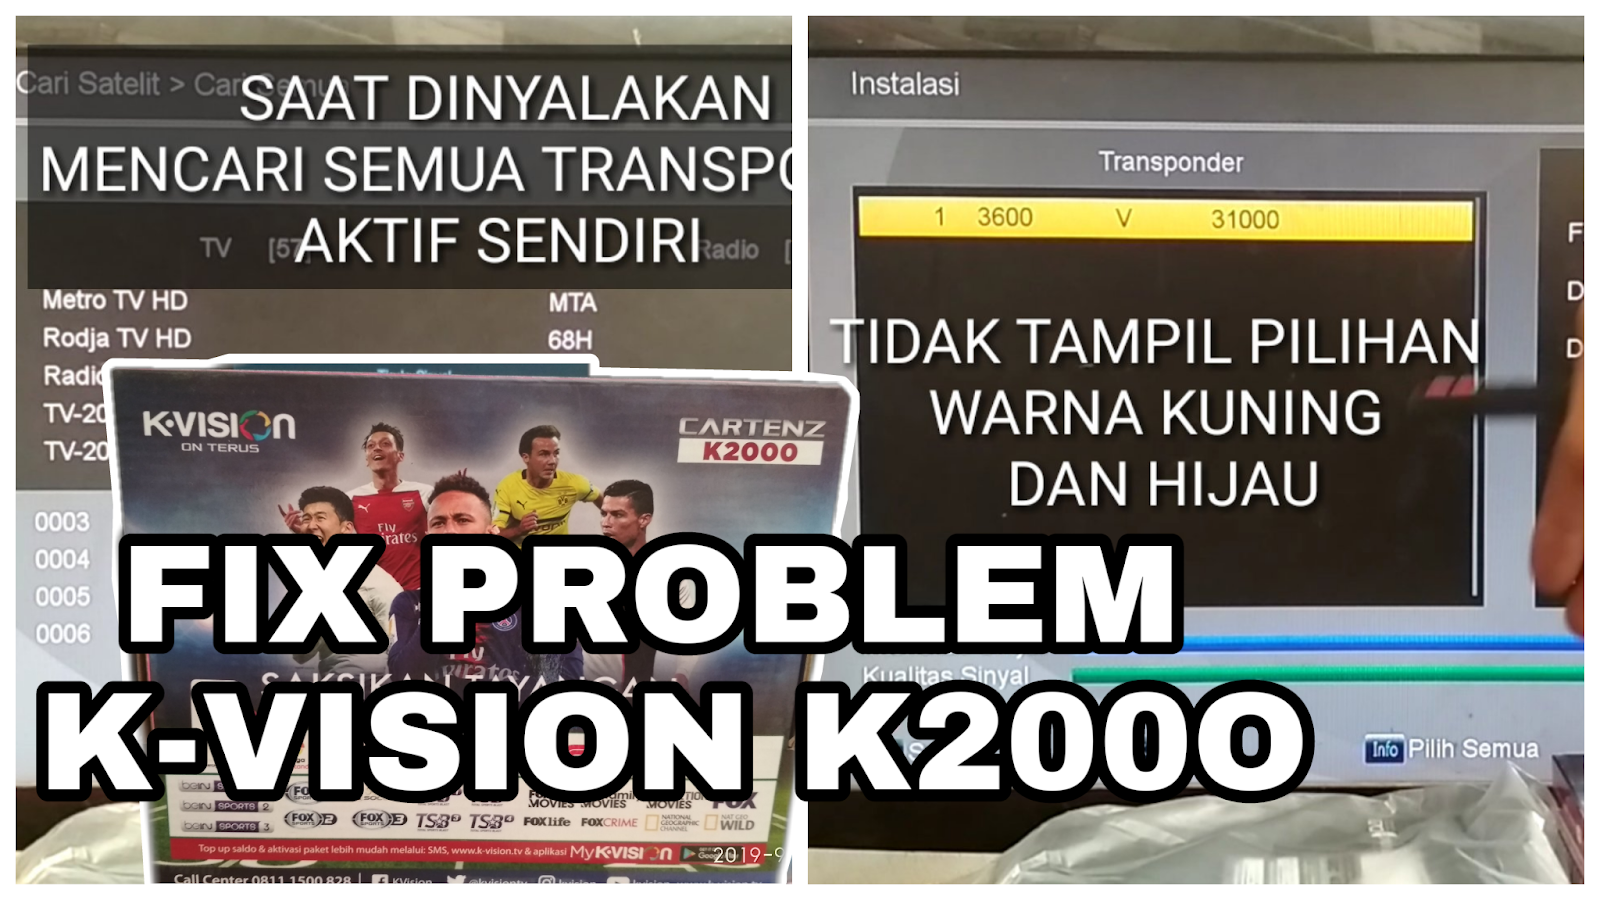 Kurniasat Fix Problem Kekurangan K Vision Cartenz K2000